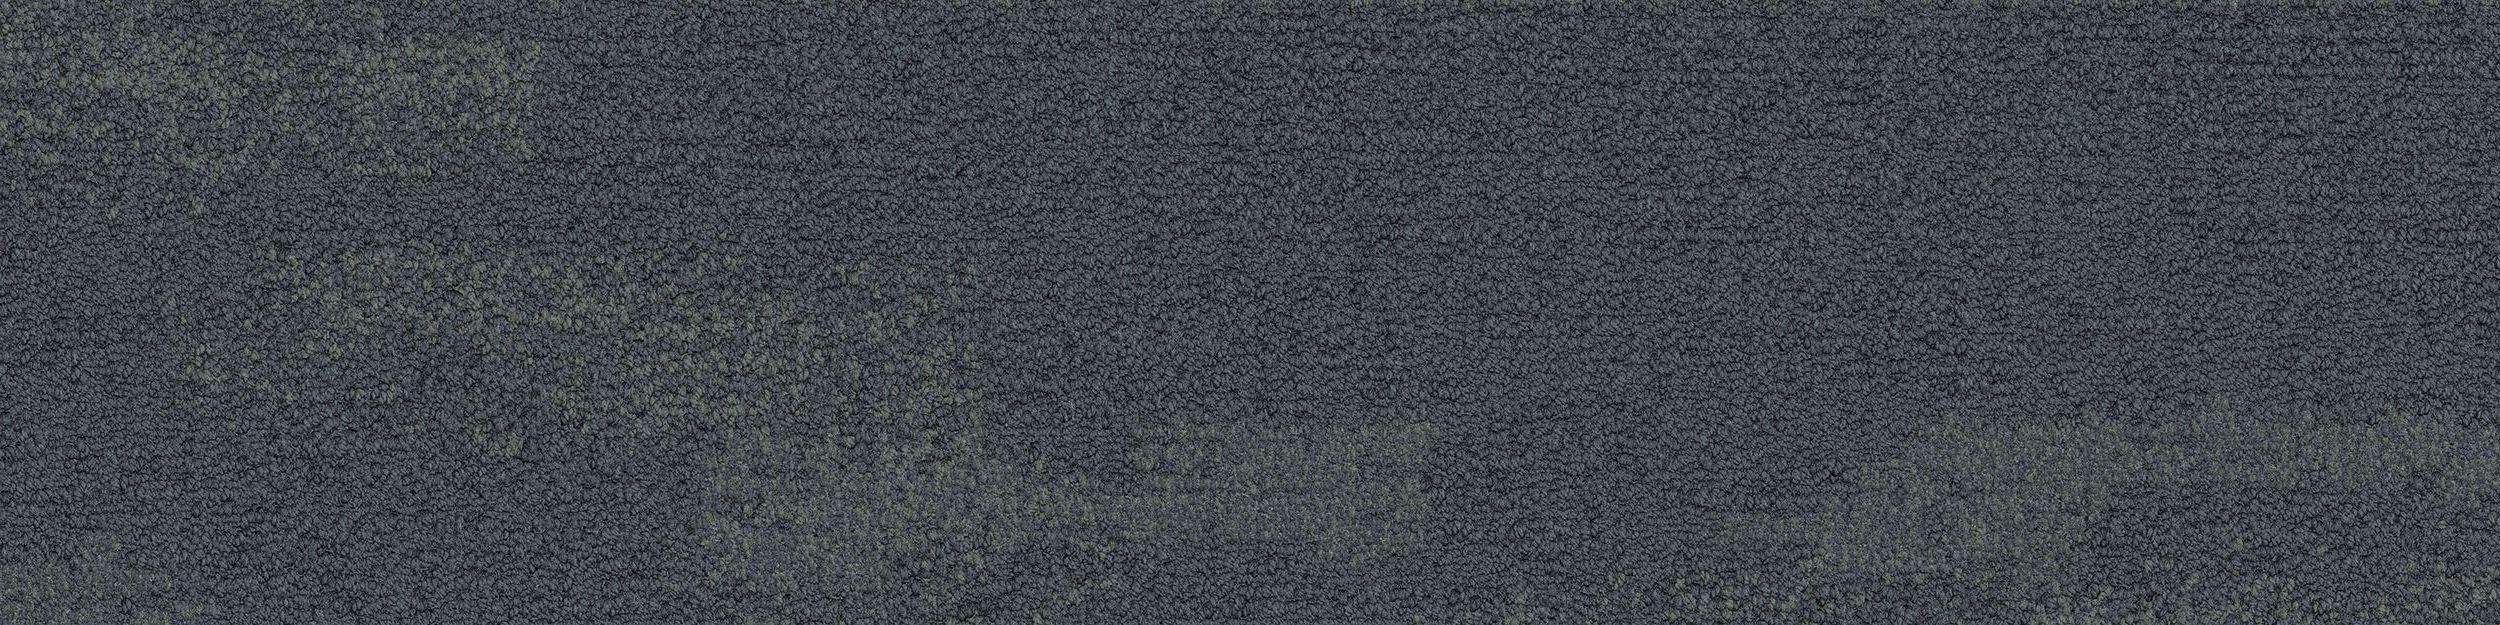 NF401 Carpet Tile In Shale numéro d’image 2